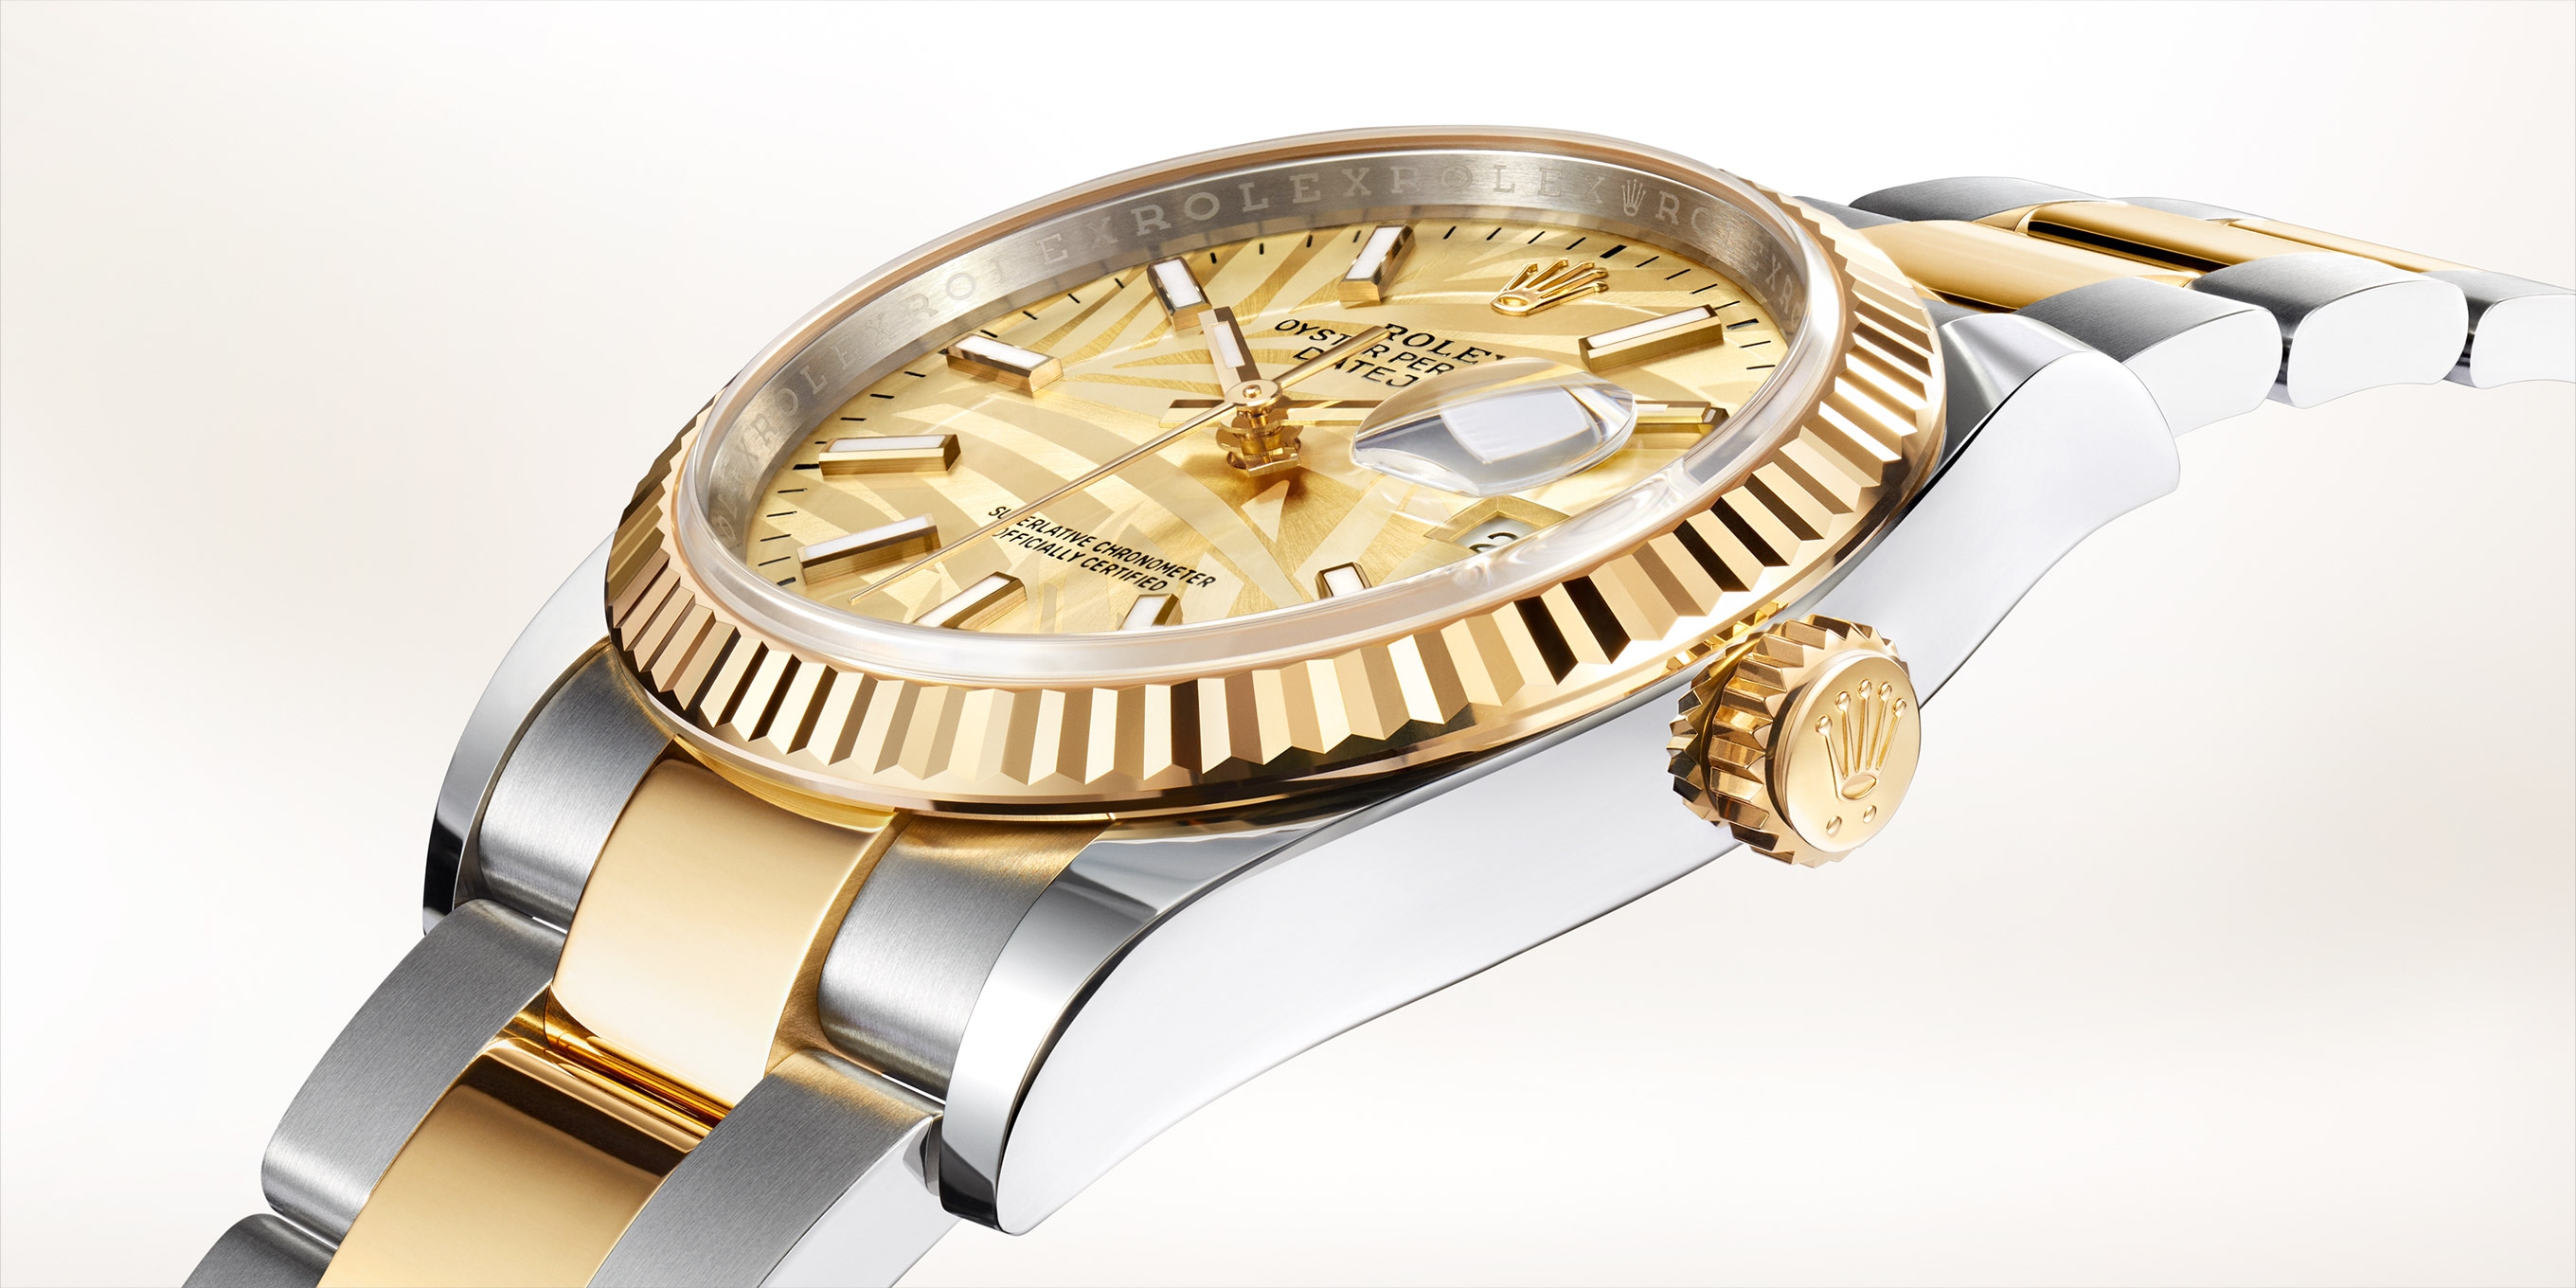 Rolex Datejust 26mm Diamond Bezel/Lugs/White Dial Jubilee Steel Watch